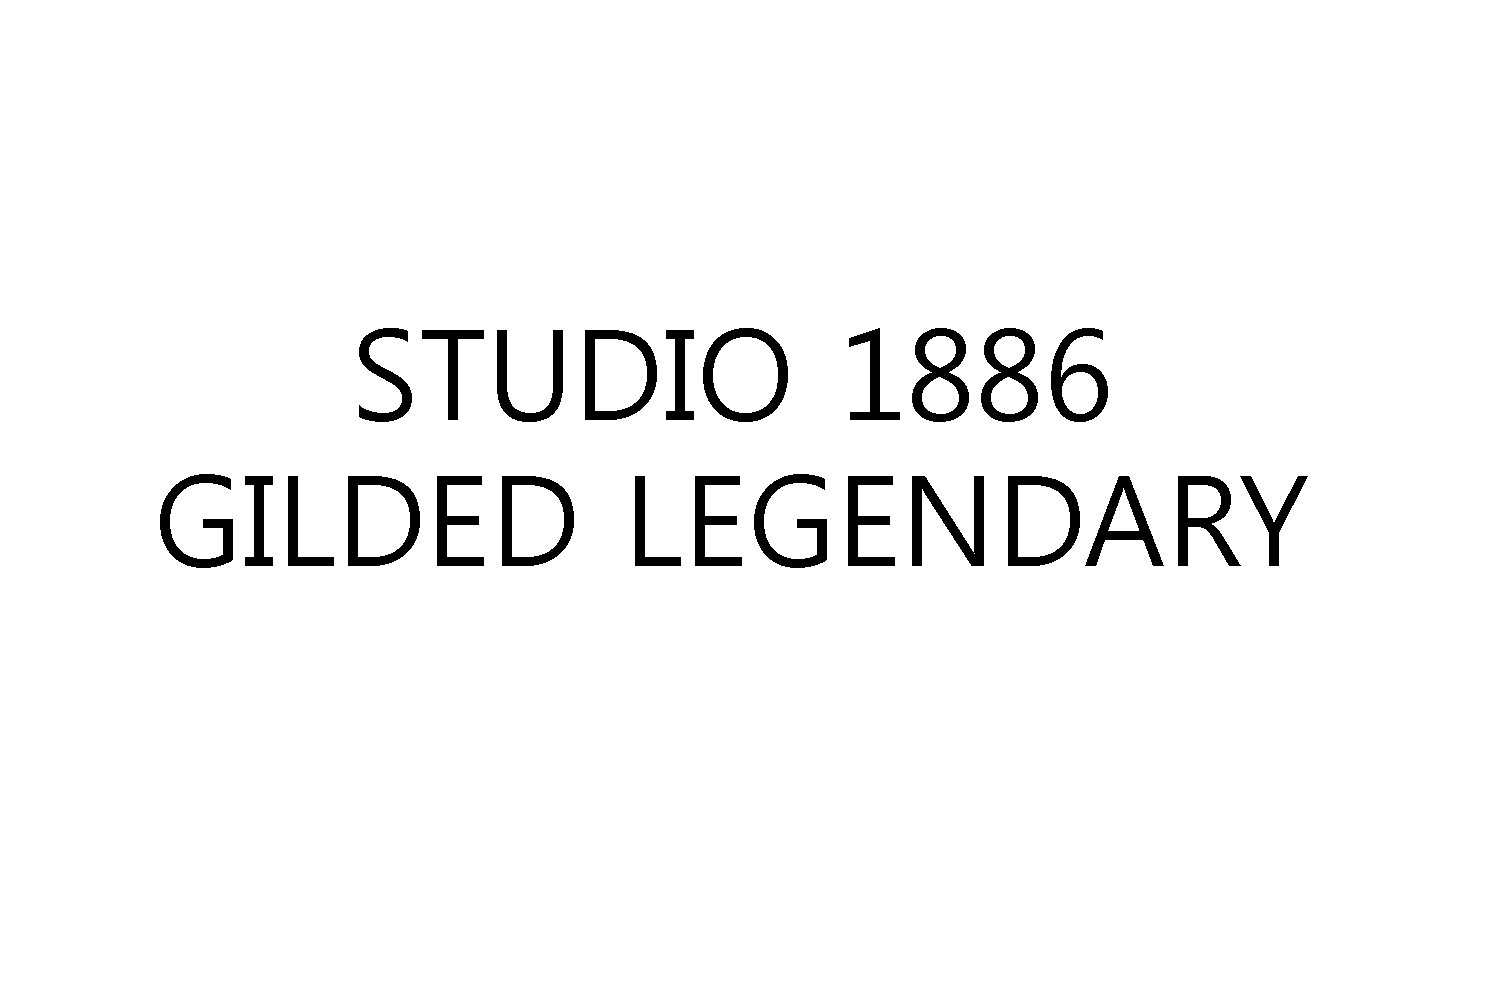  STUDIO 1886 GILDED LEGENDARY